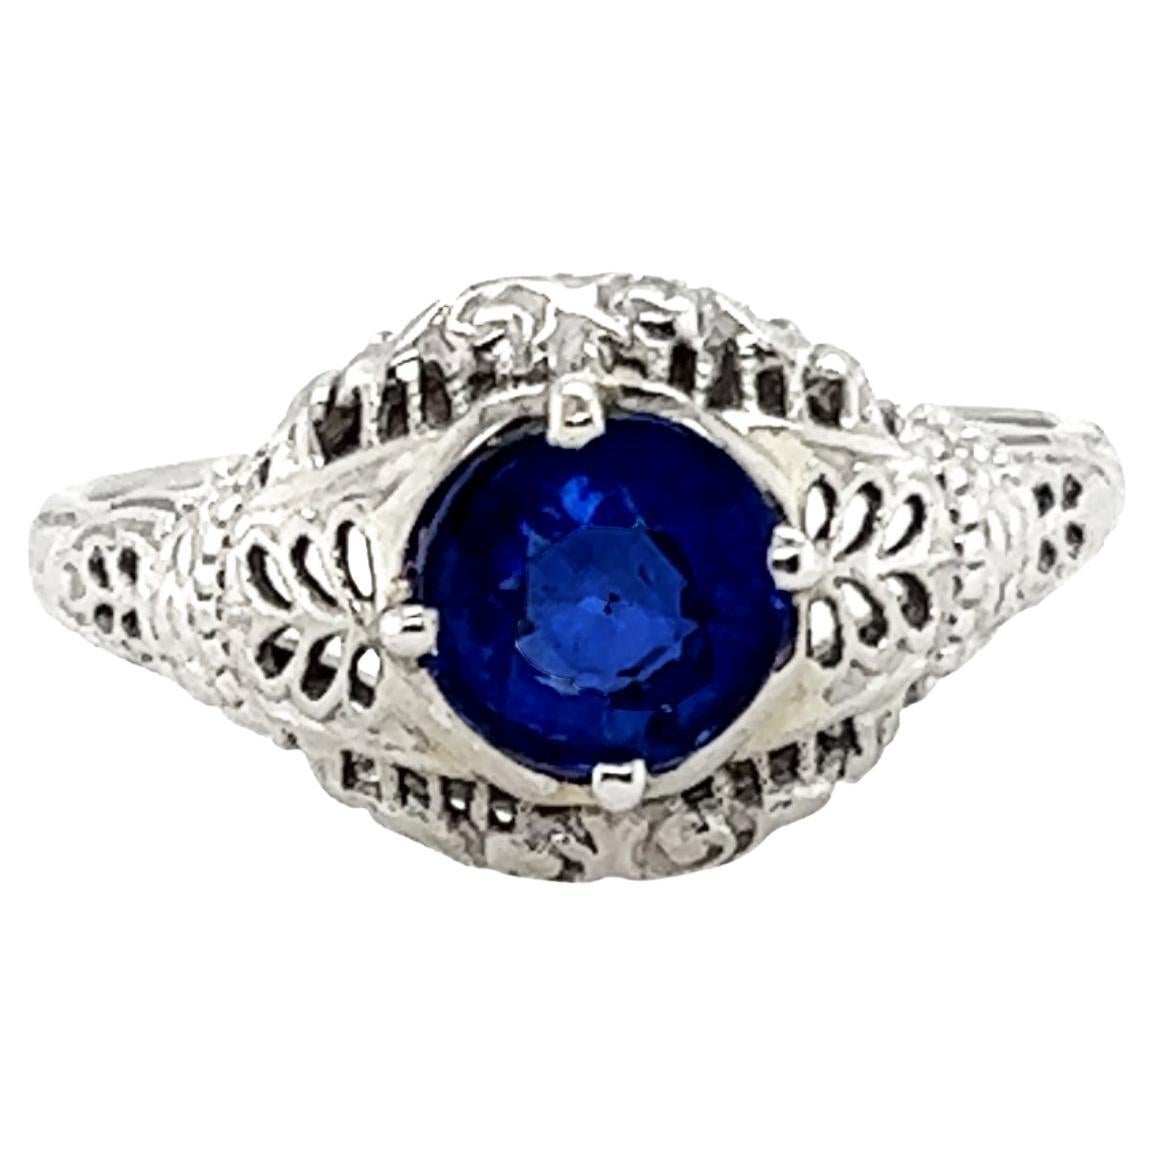 Art Deco Sapphire Ring 1.14 Carat Solitaire Original 1930s Filigree Antique 18k